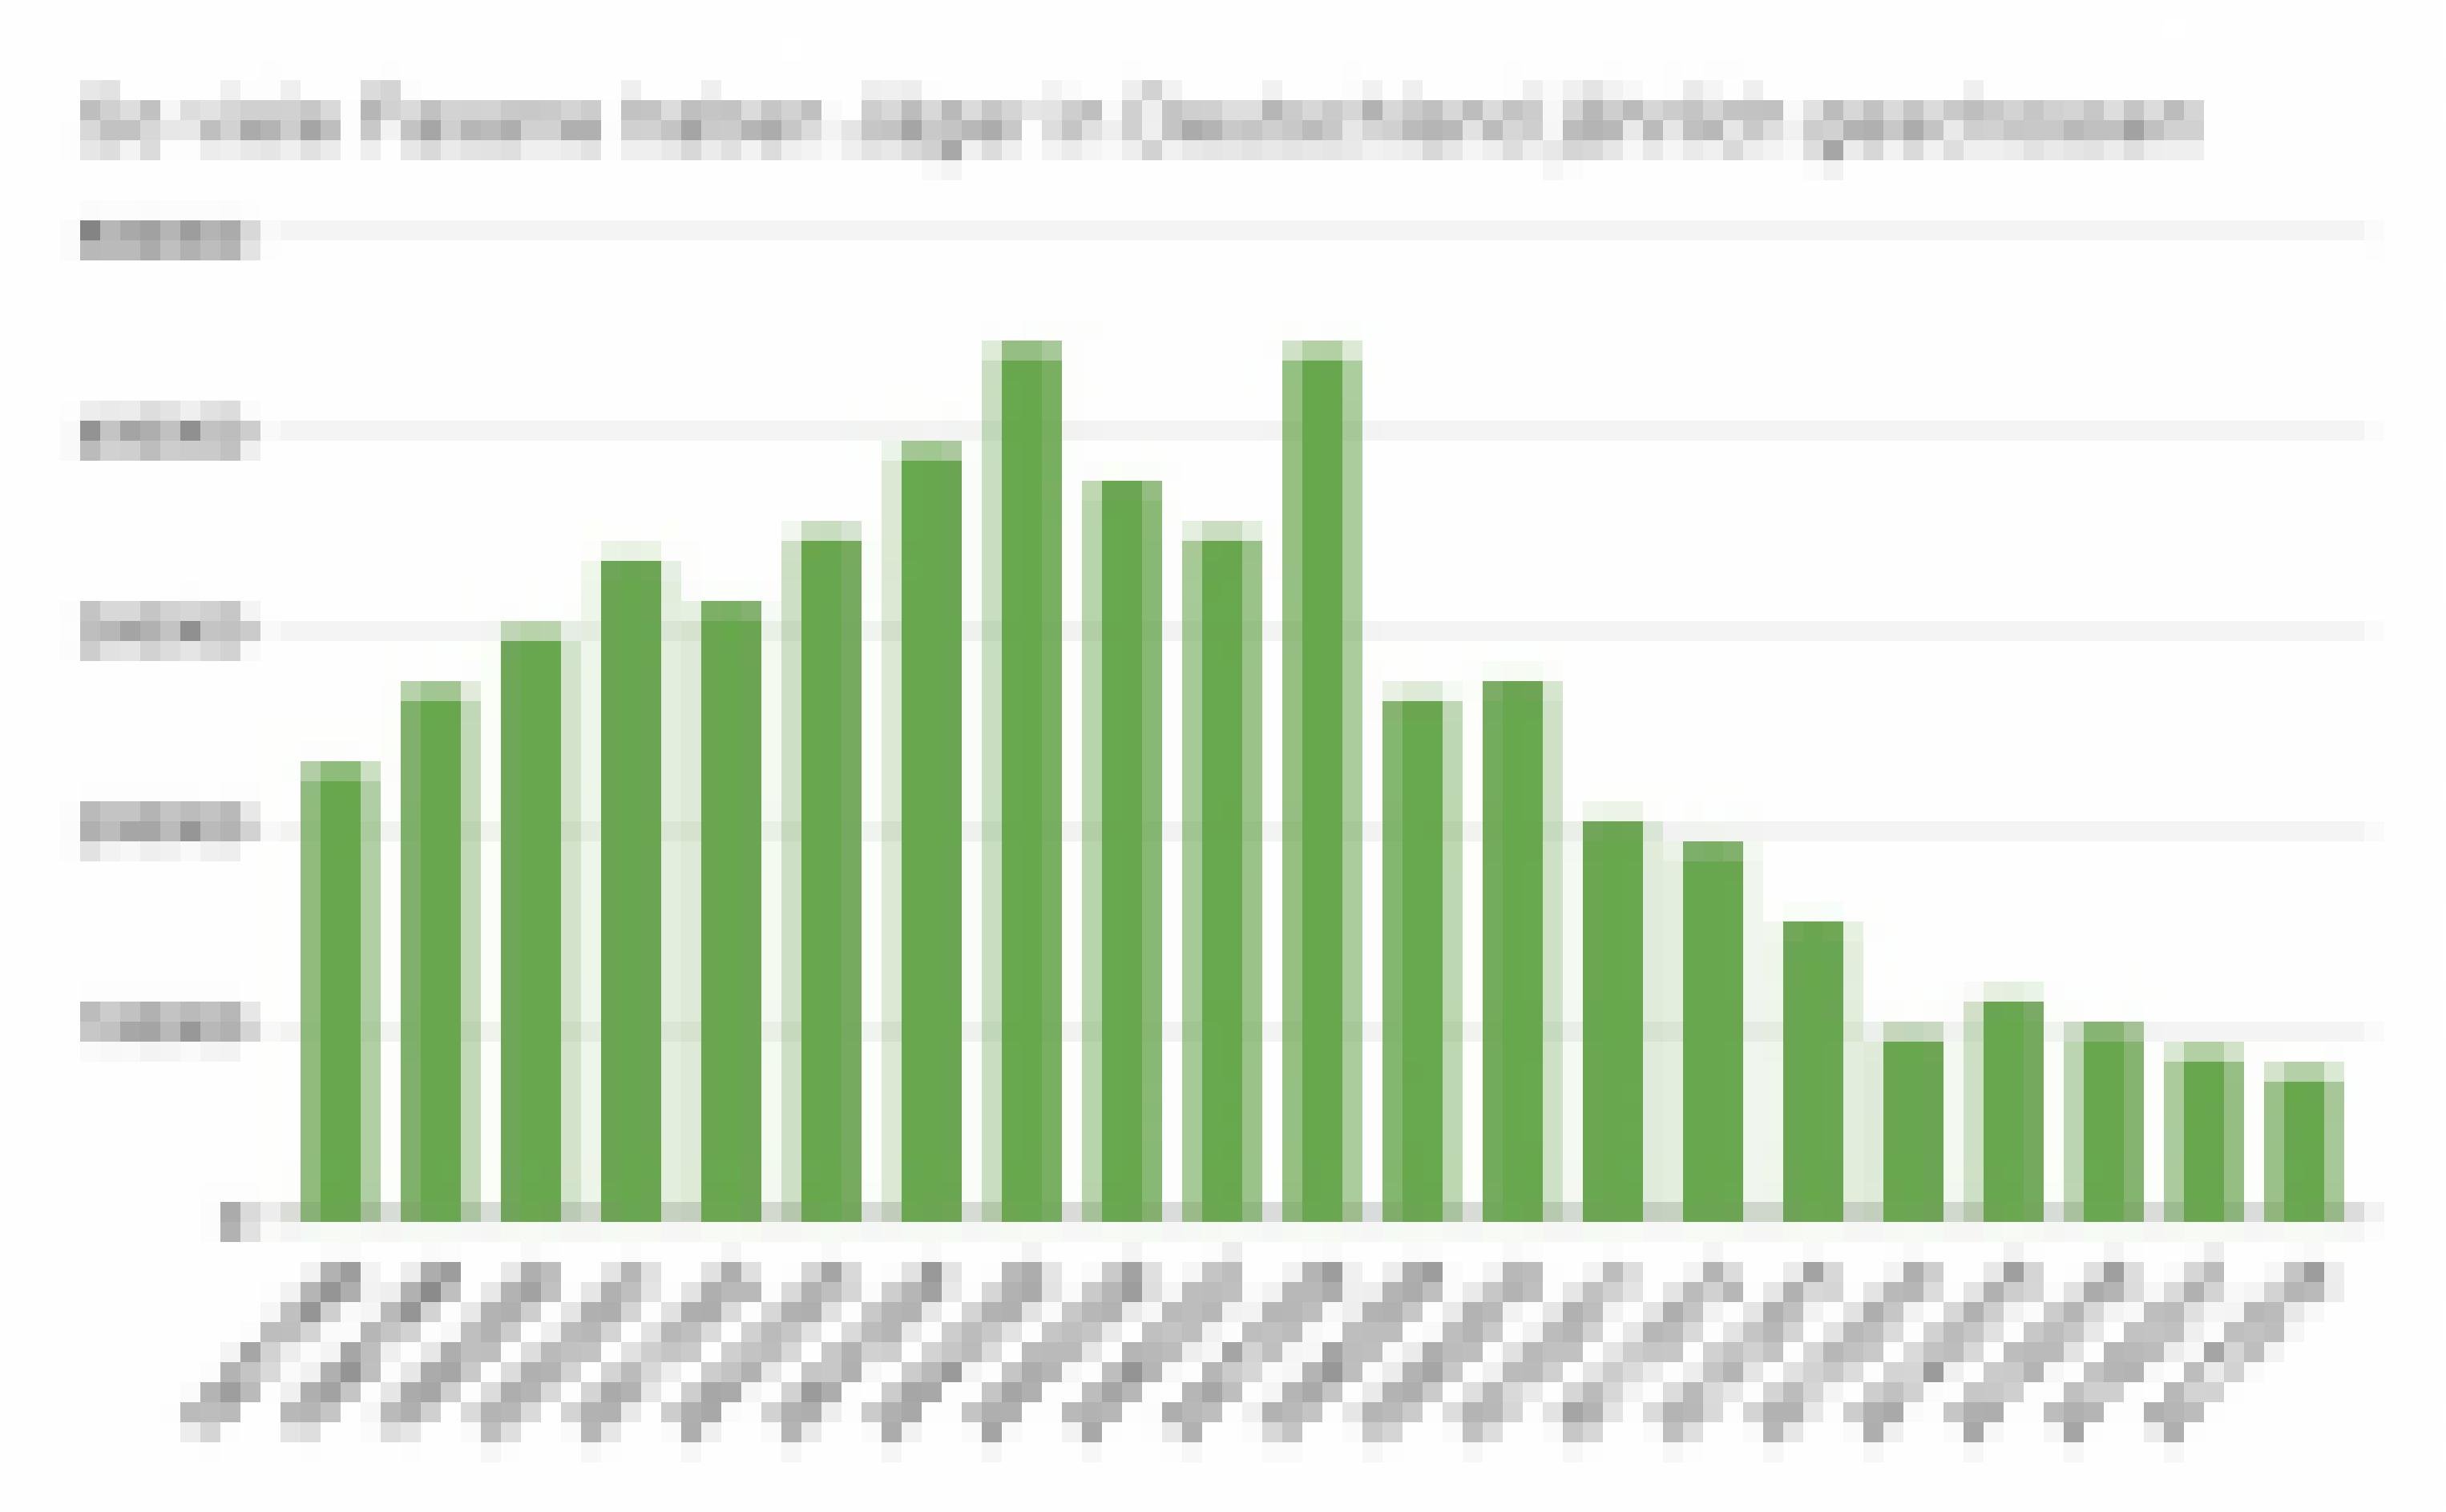 Grafik zu Fasanen, vom Deutschen Jagdverband. Sie zeigt, dass die Zahl der geschossenen Fasane stark rückläufig ist.